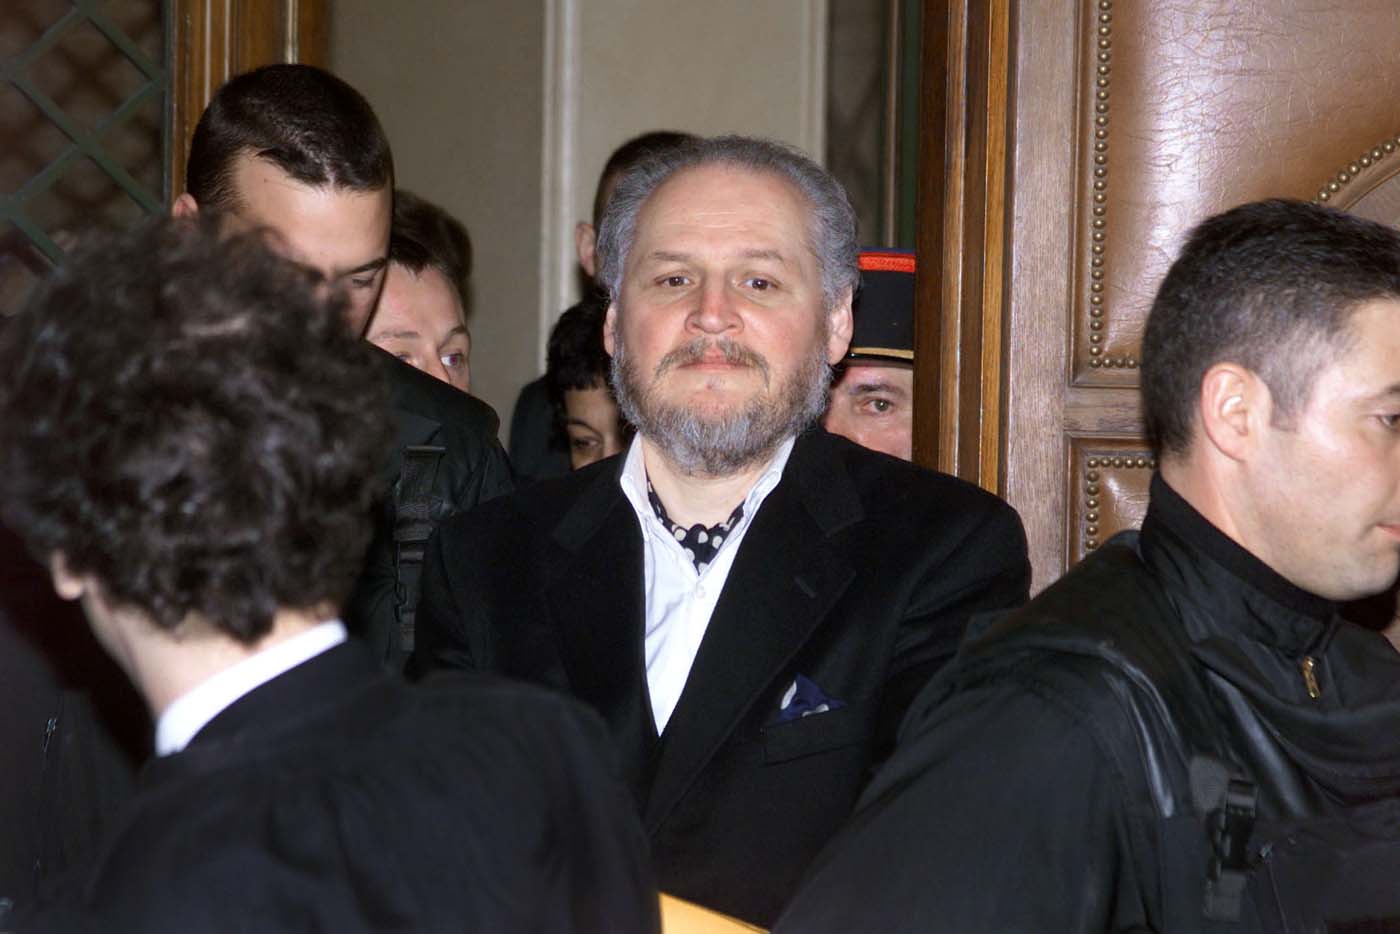 Comienza juicio en apelación contra Carlos “El Chacal” por atentado de 1974 en París